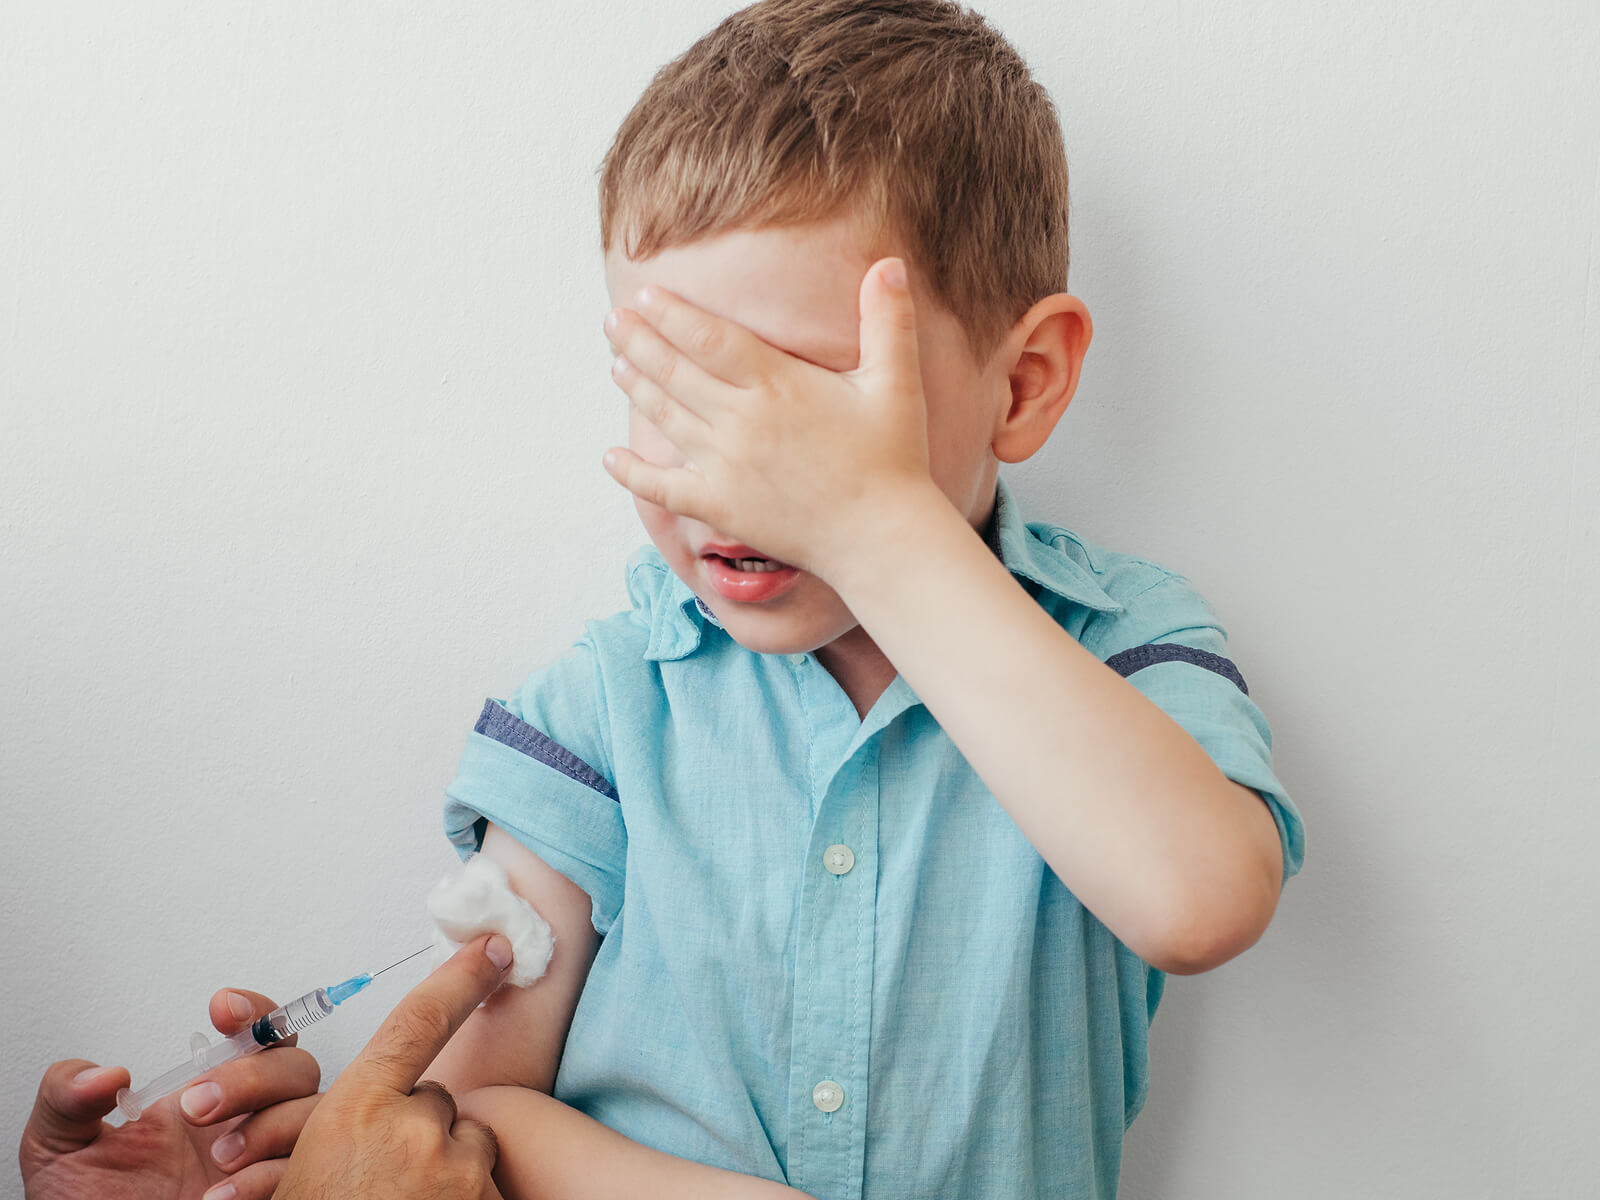 Criança no pediatra cobrindo o rosto porque está com medo enquanto está sendo vacinado.